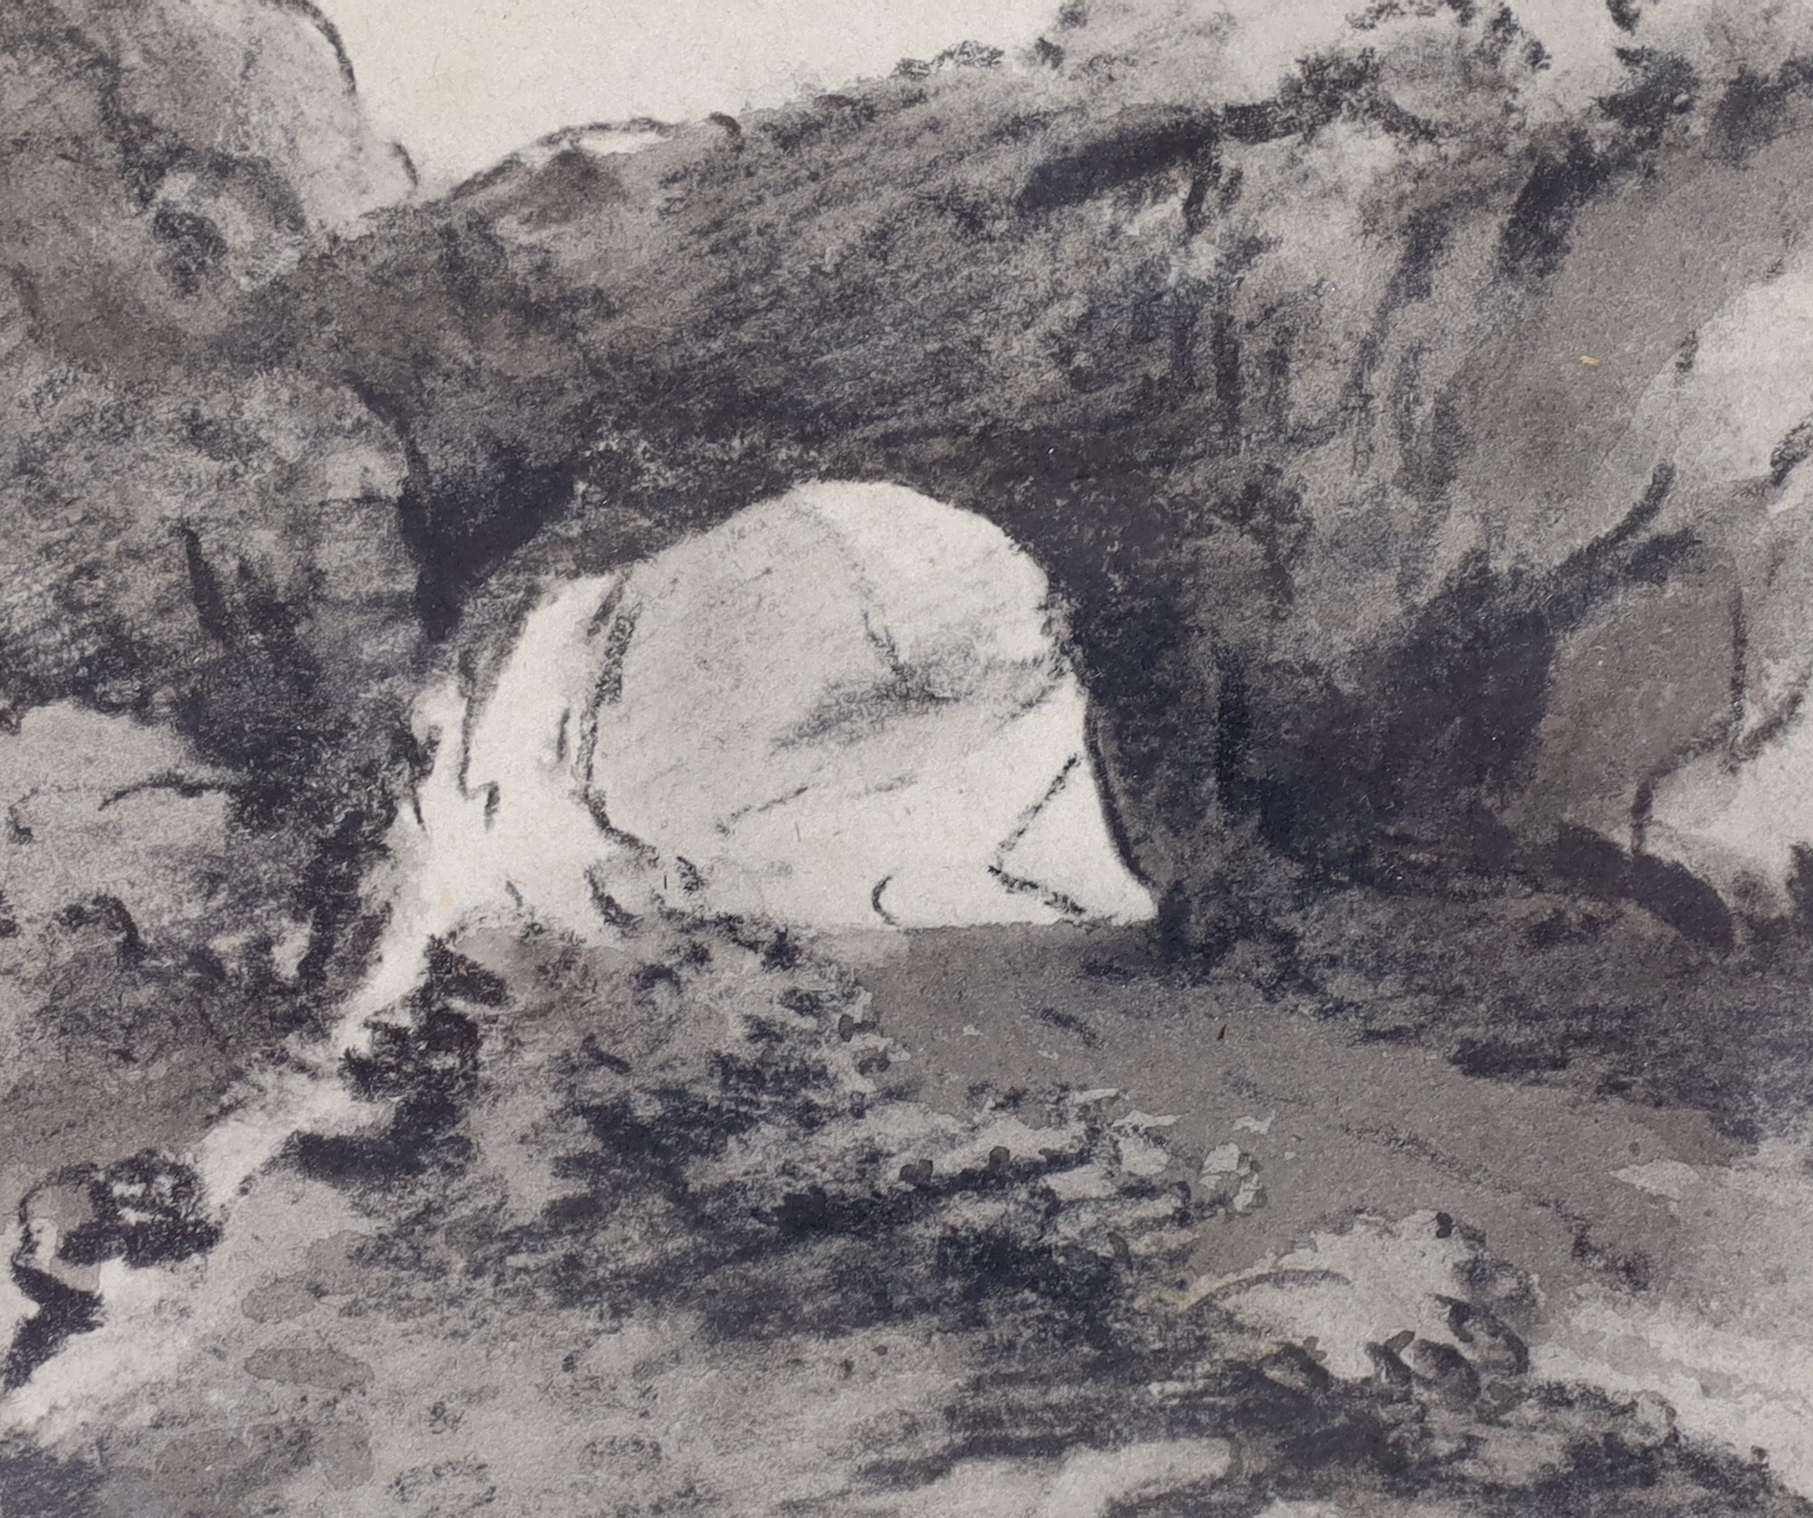 Dr Thomas Monro (1759-1833), charcoal, Study of a landscape, details verso, 12cm x 10cm